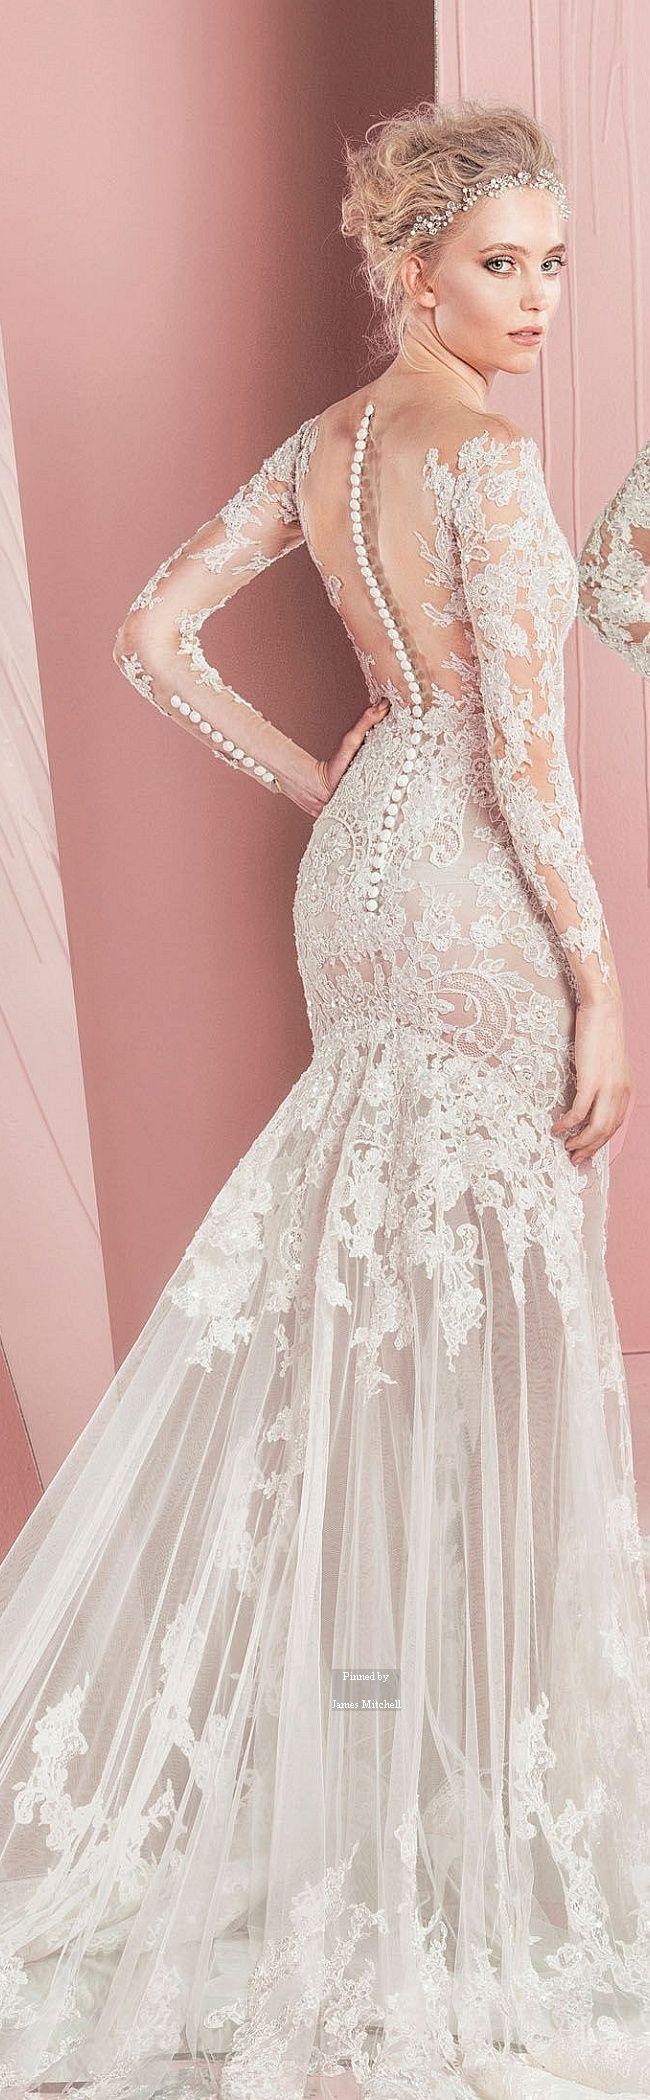 زفاف - WEDDING Dress1